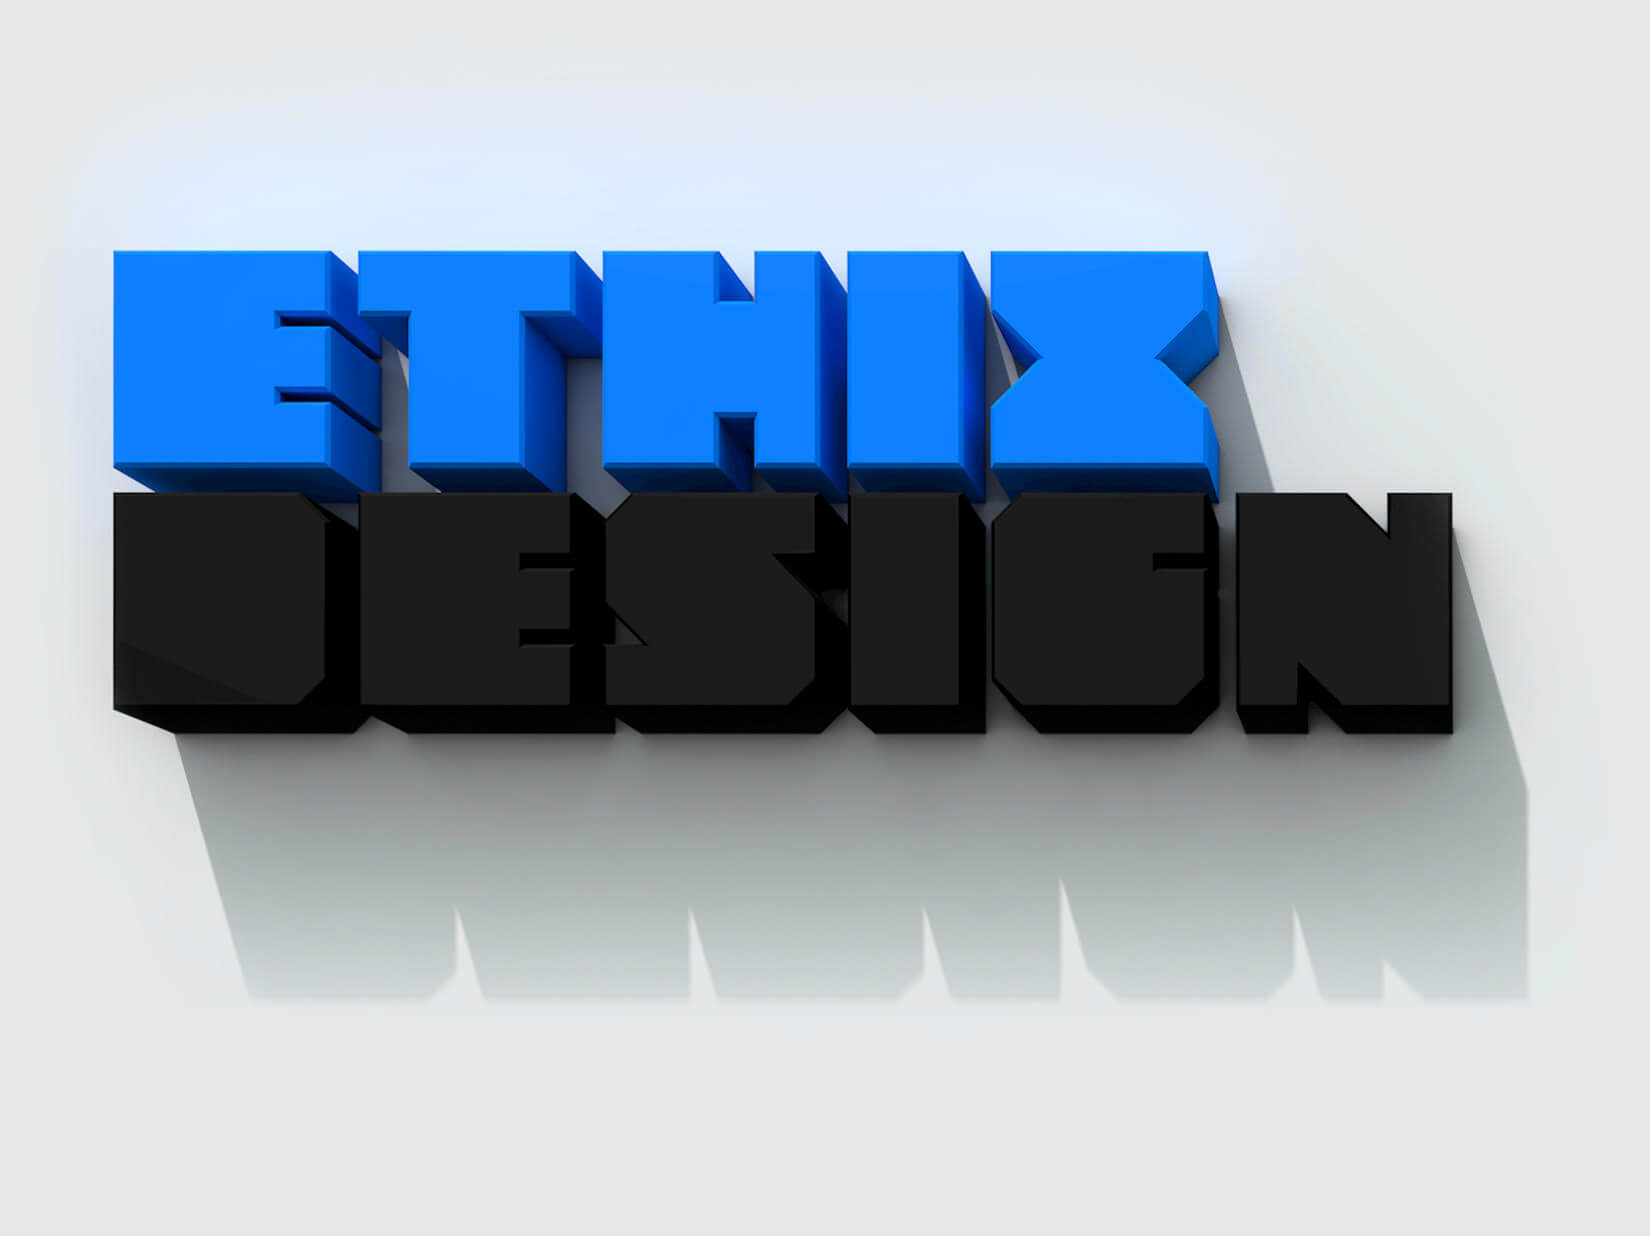 Ethix Design